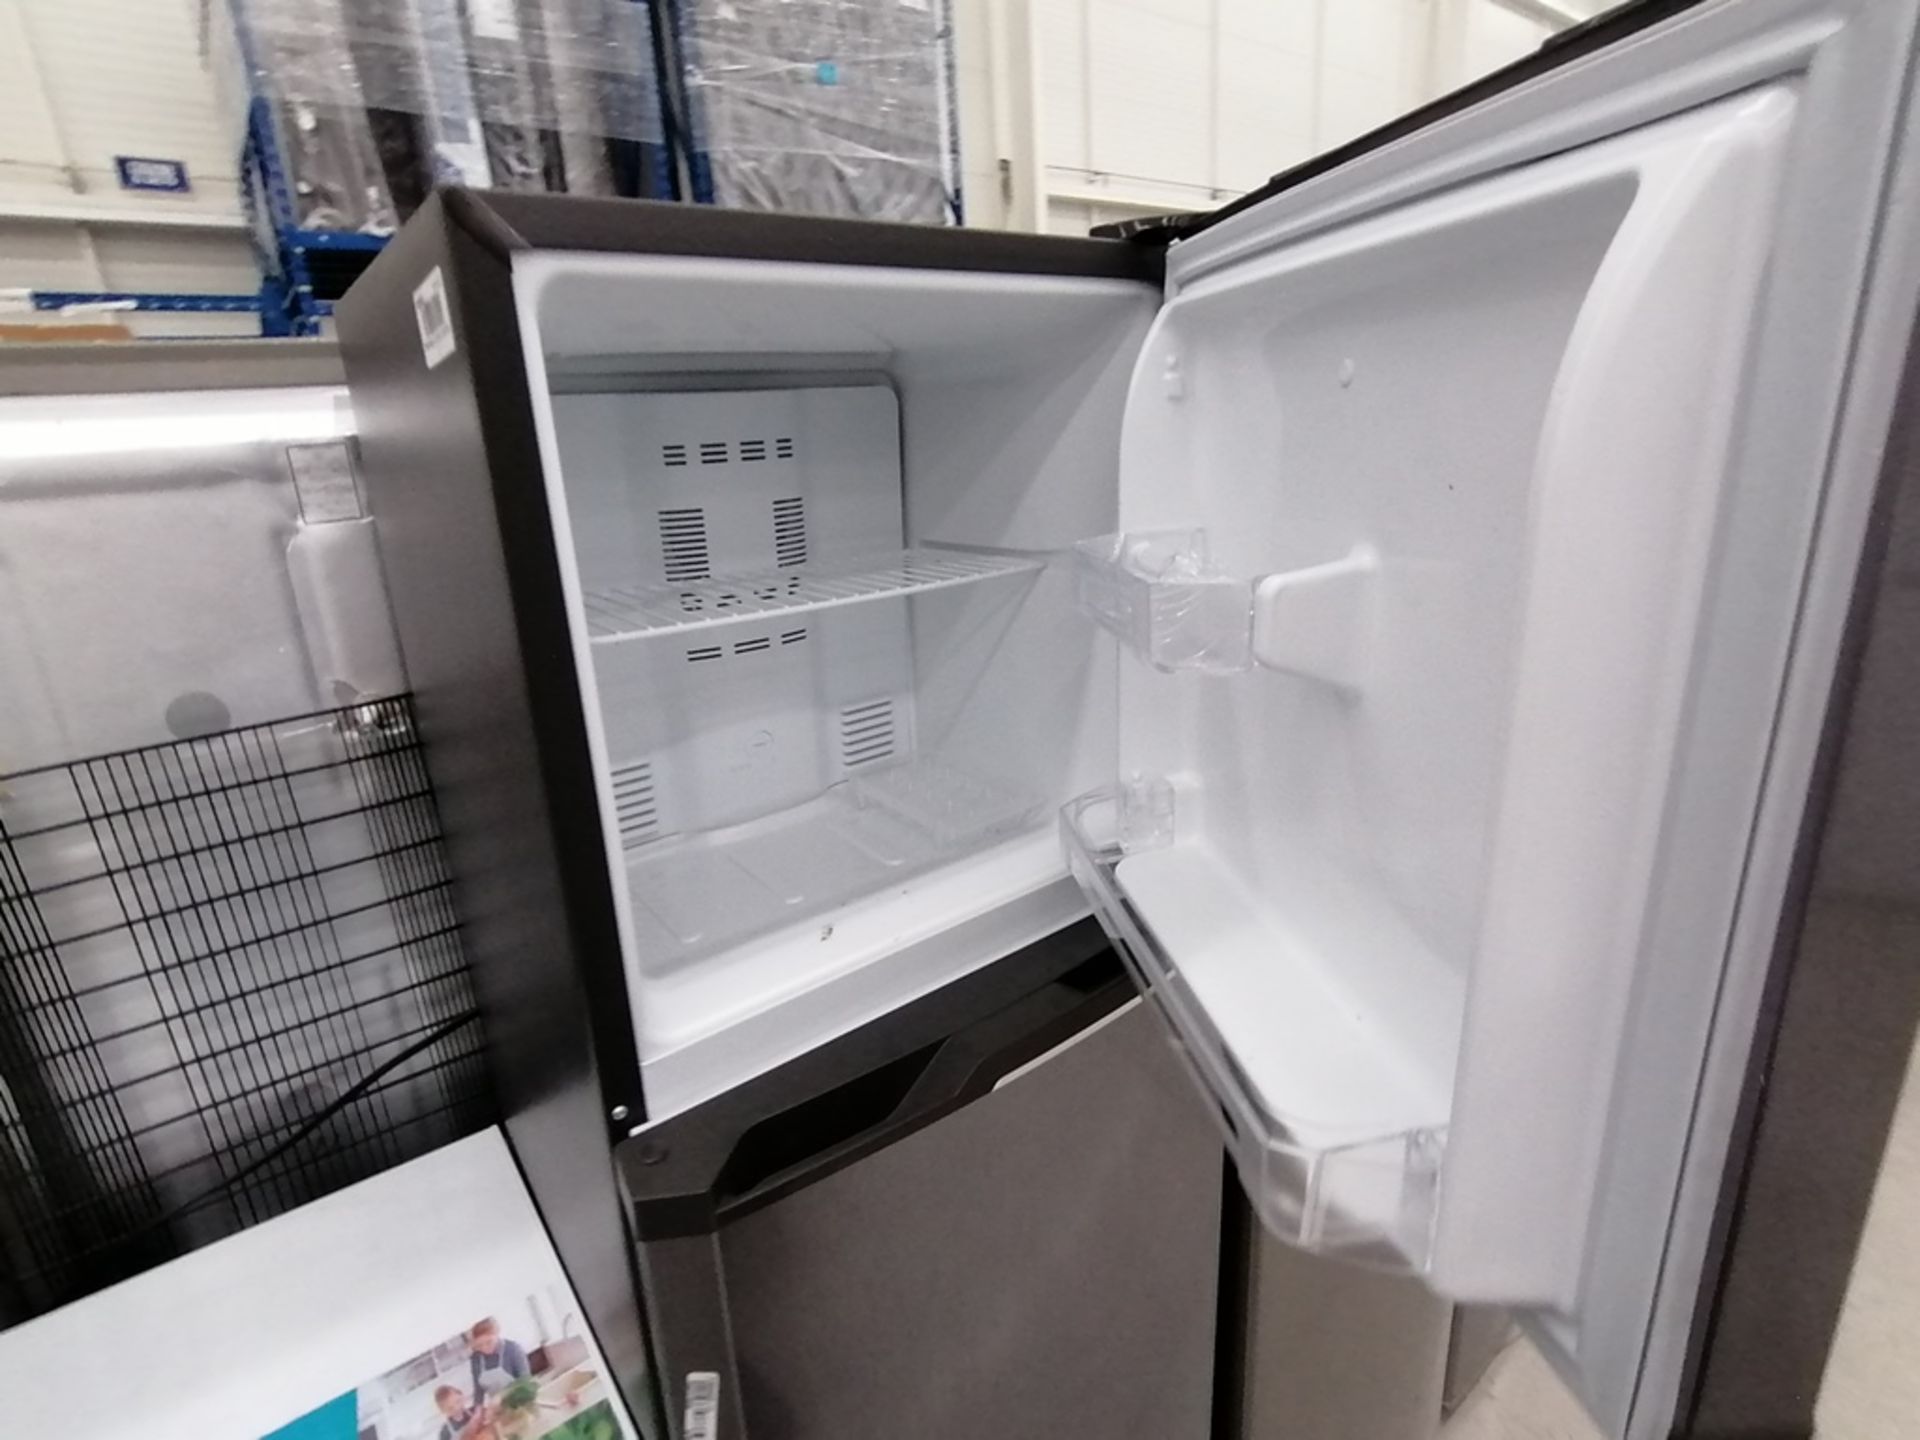 Lote de 2 refrigeradores incluye: 1 Refrigerador, Marca Mabe, Modelo RMA1025VNX, Serie 2110B623189, - Image 5 of 17